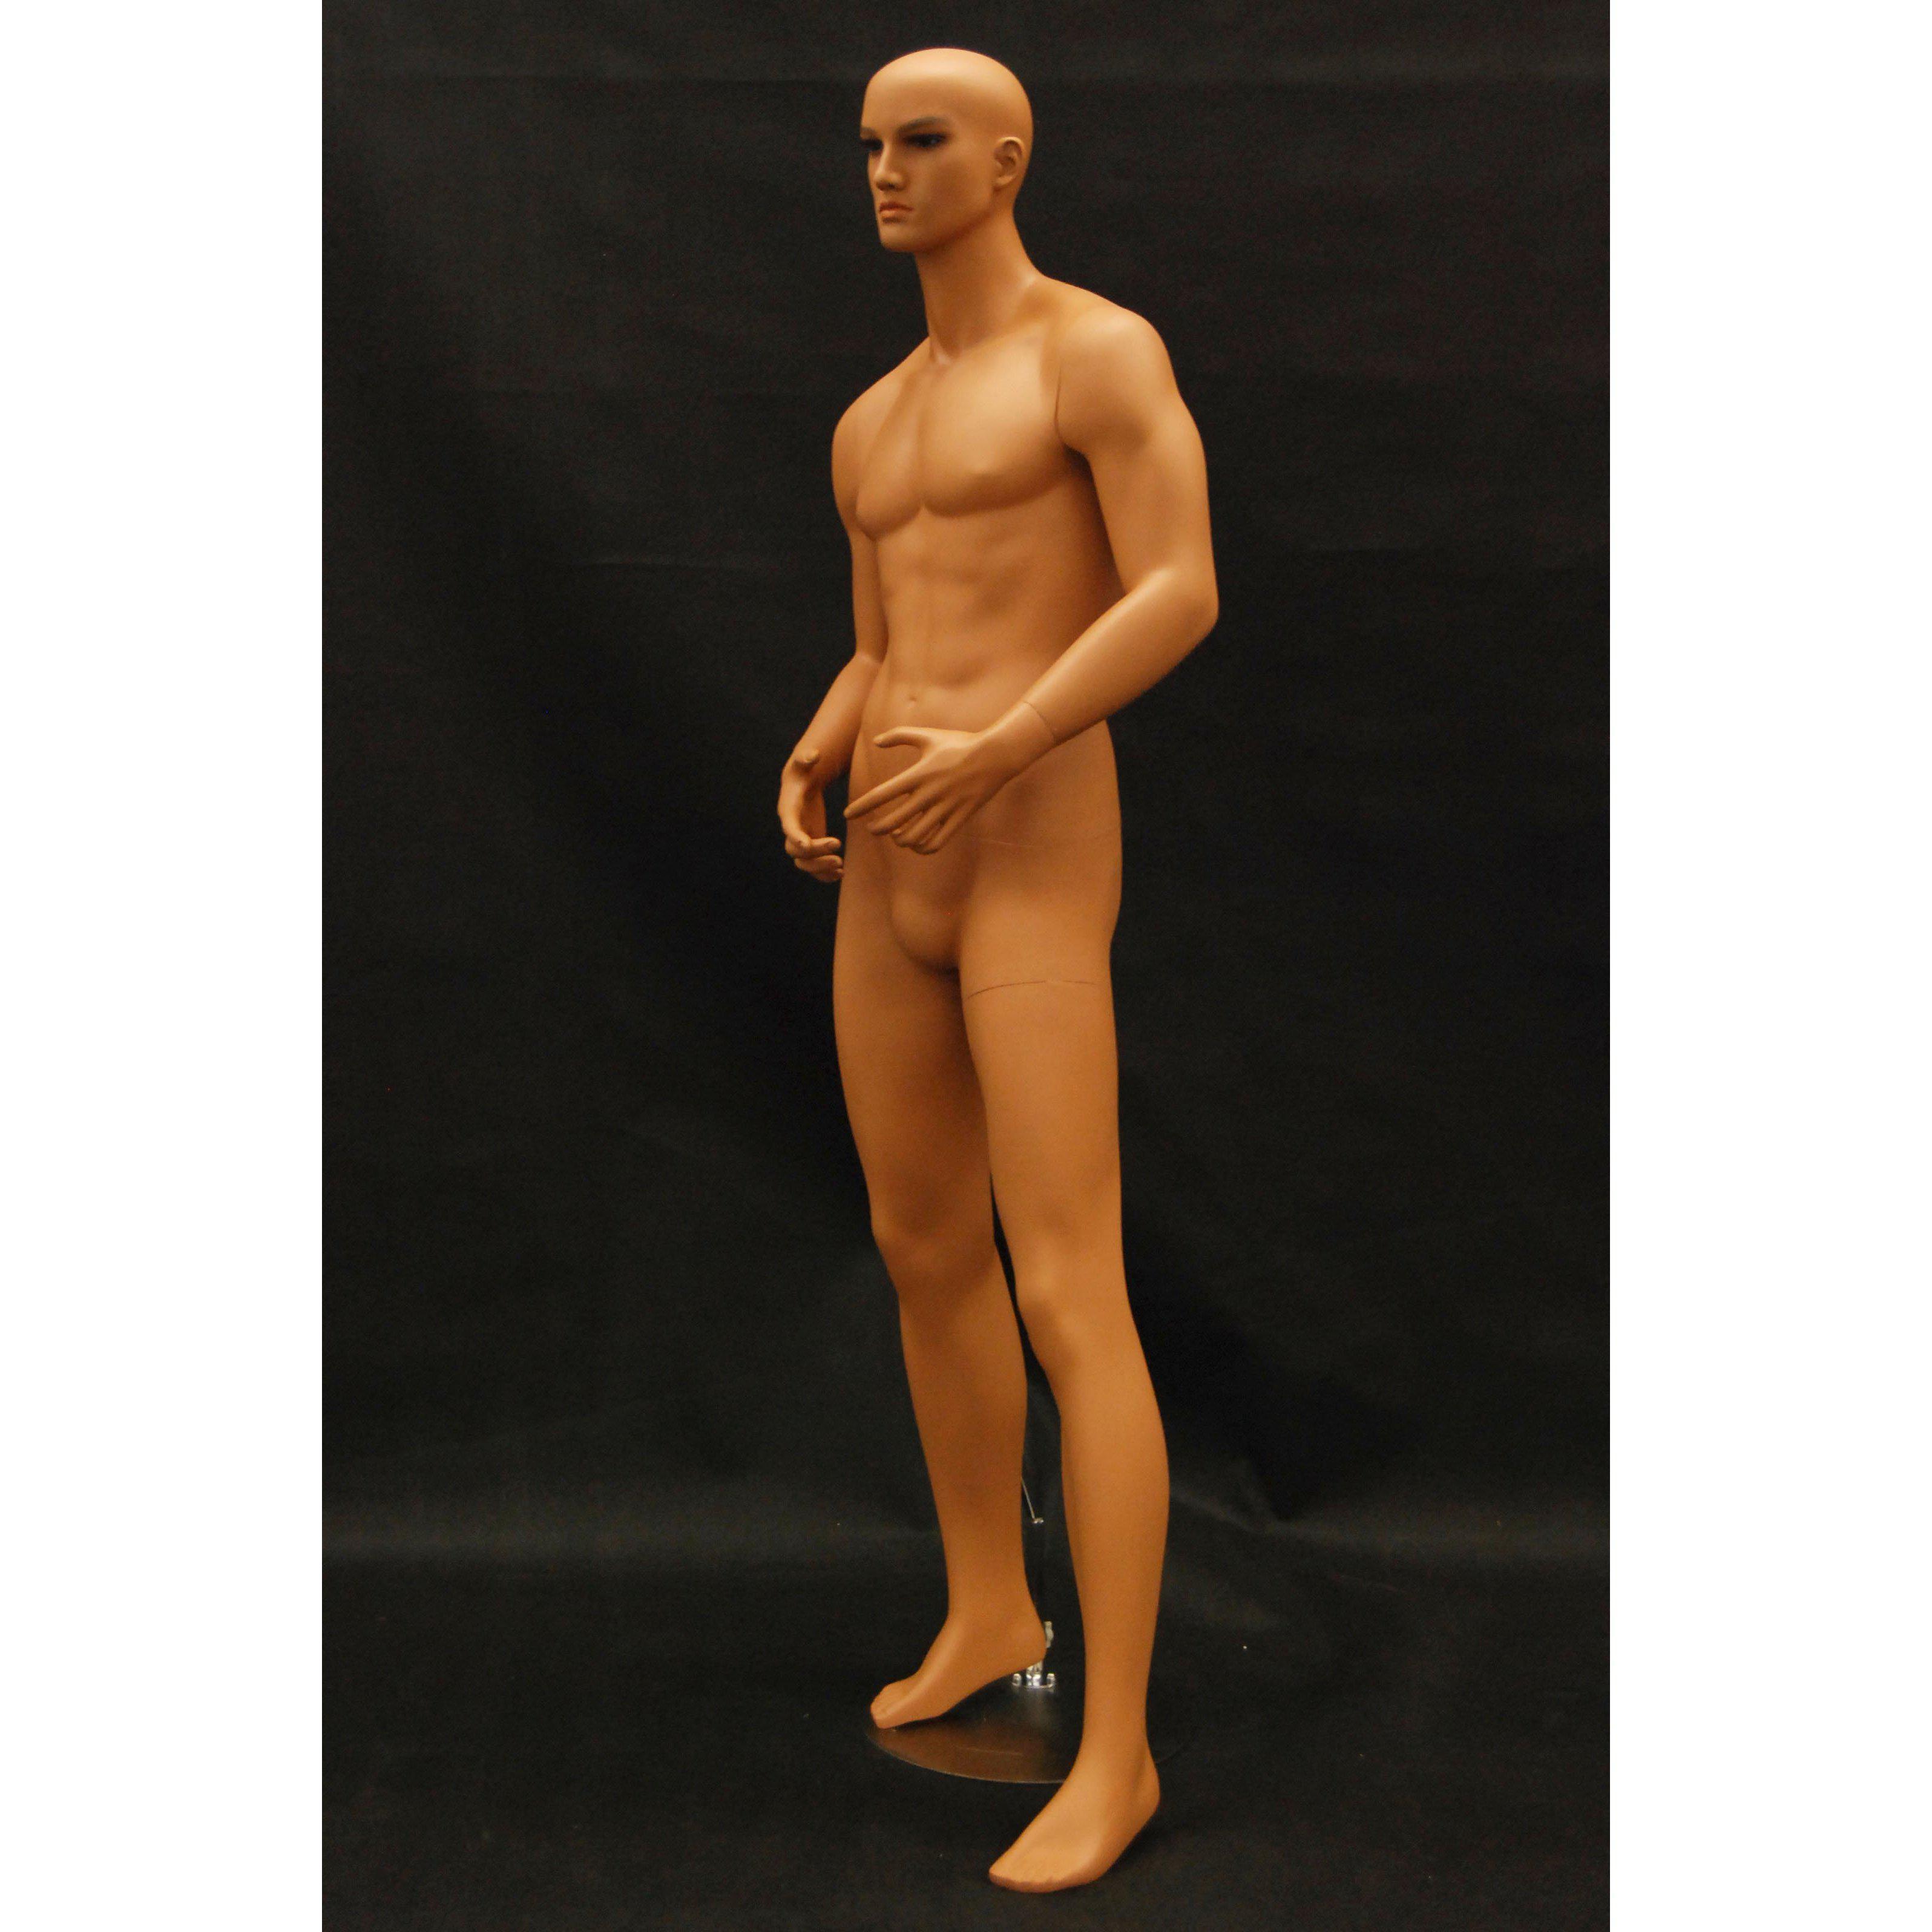 Male Mannequin Fleshtone MM-STEVE - Mannequin Mode